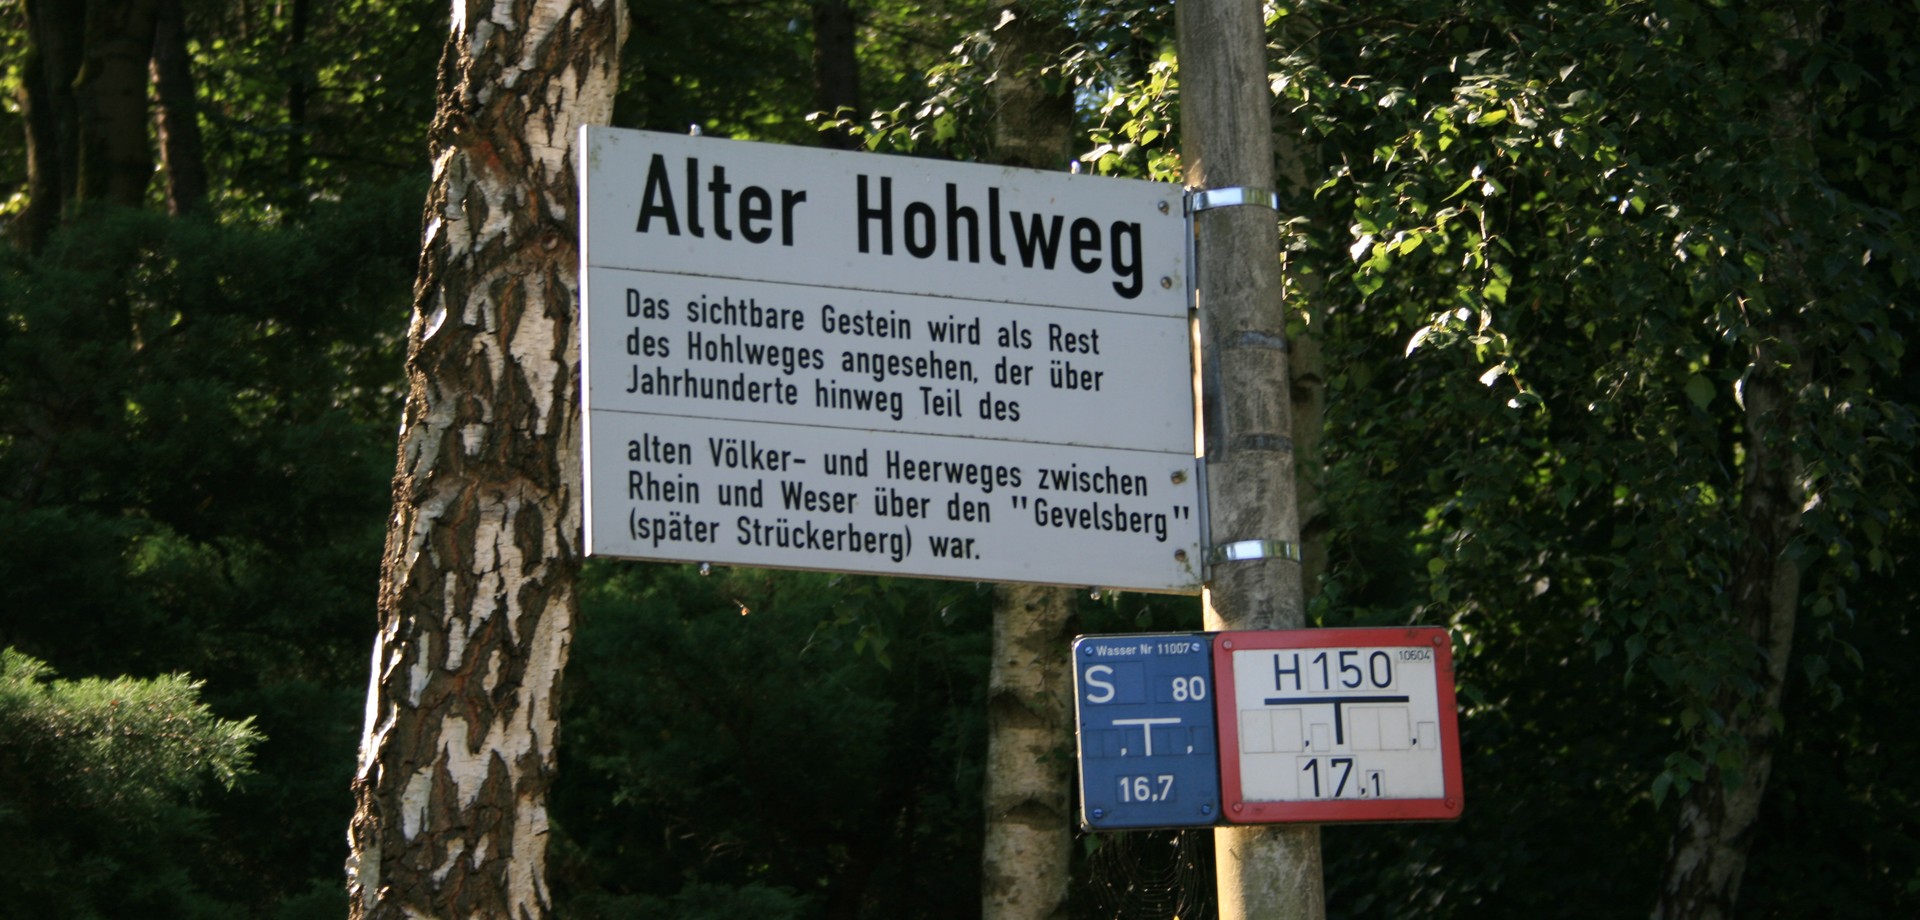 Straßenschild "Alter Hohlweg" in Gevelsberg (Foto: Altertumskommission).